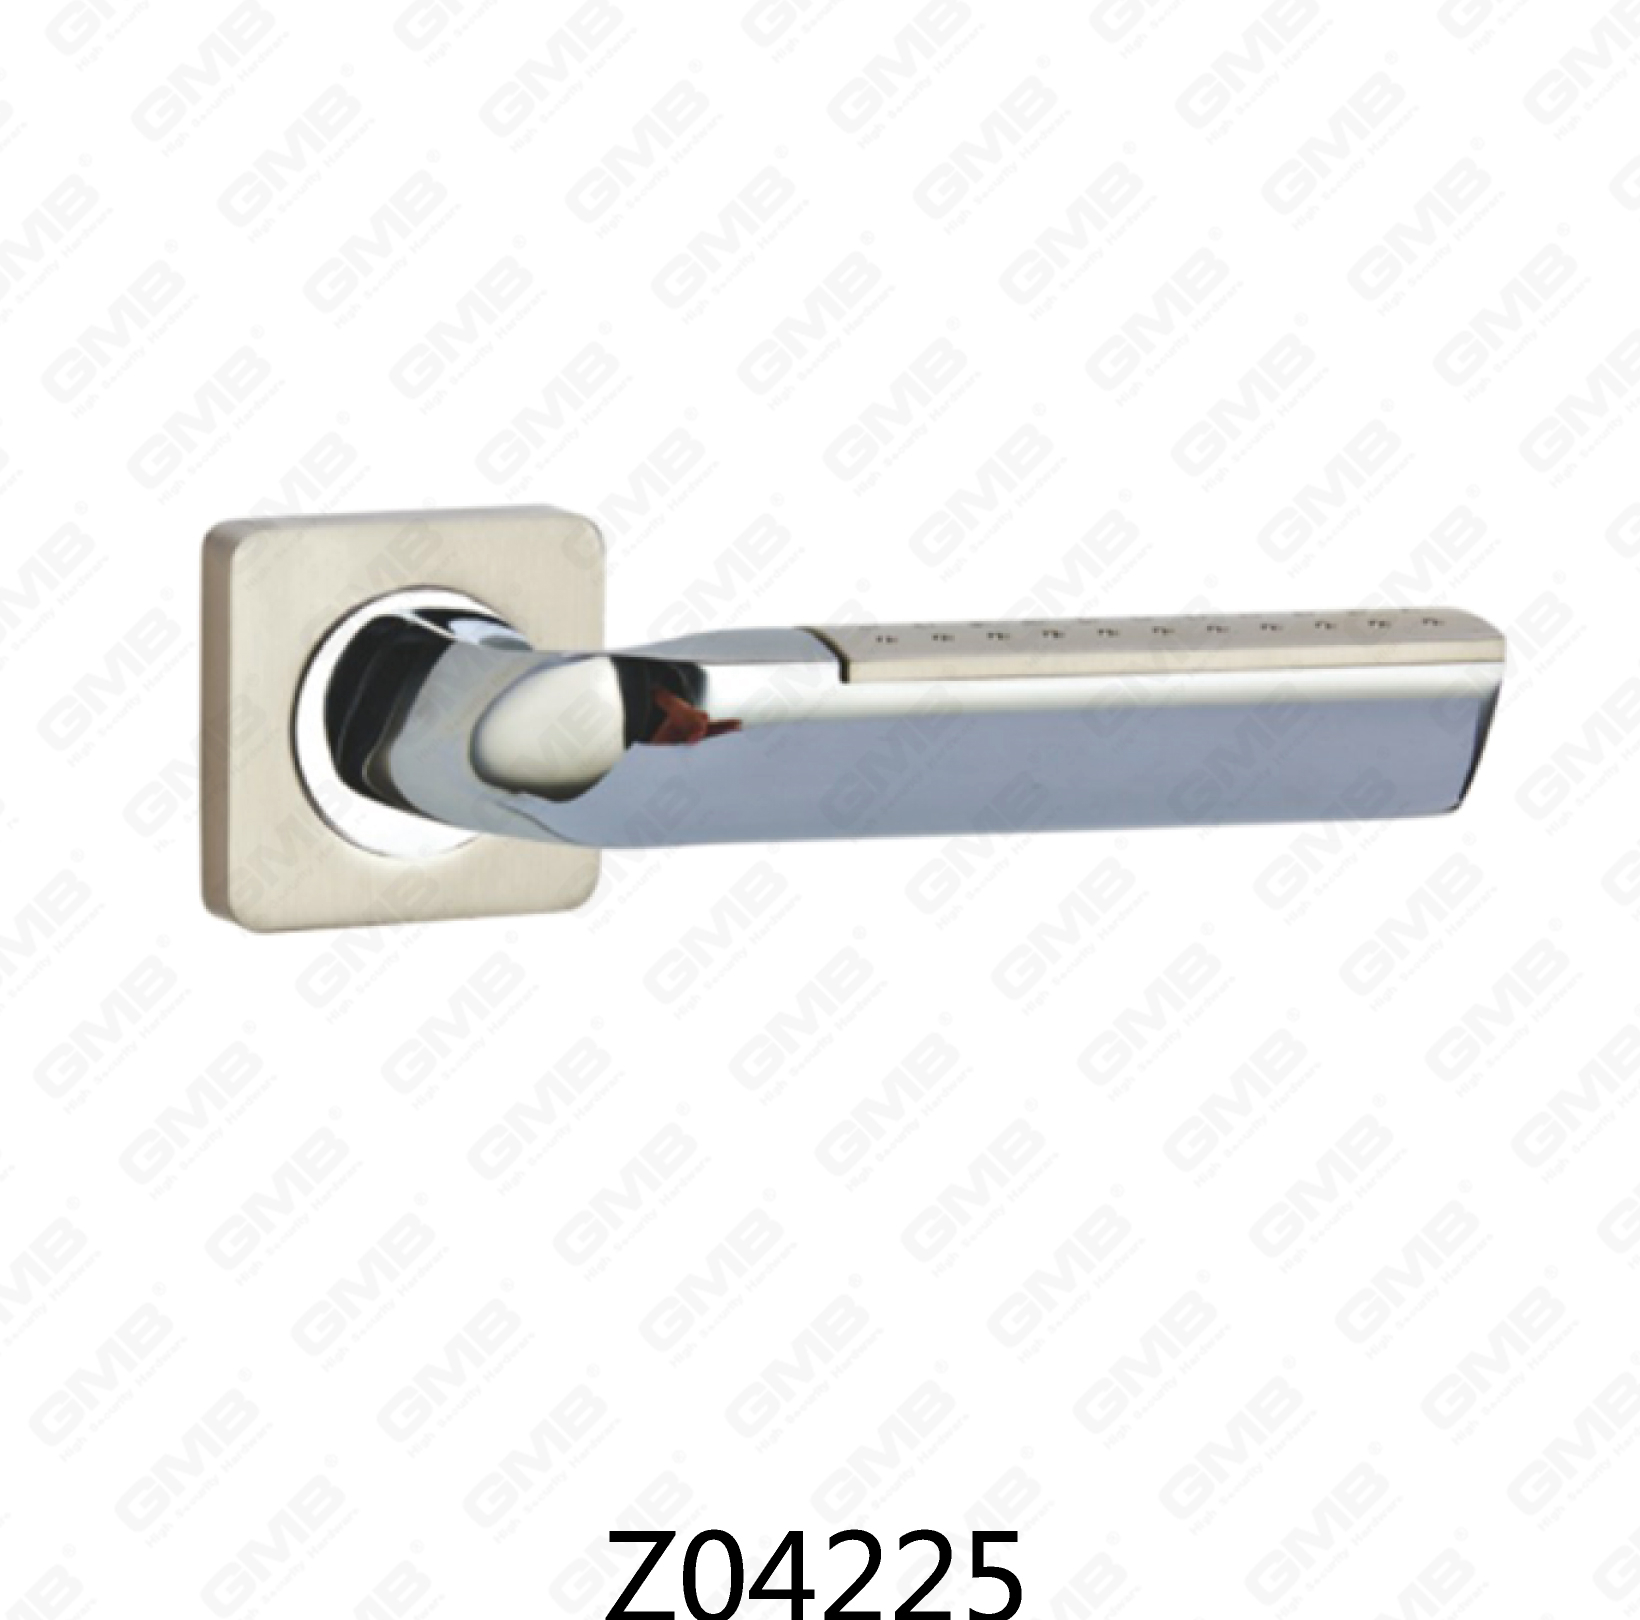 ידית דלת רוזטת אלומיניום מסגסוגת אבץ של Zamak עם רוזטה עגולה (Z04225)